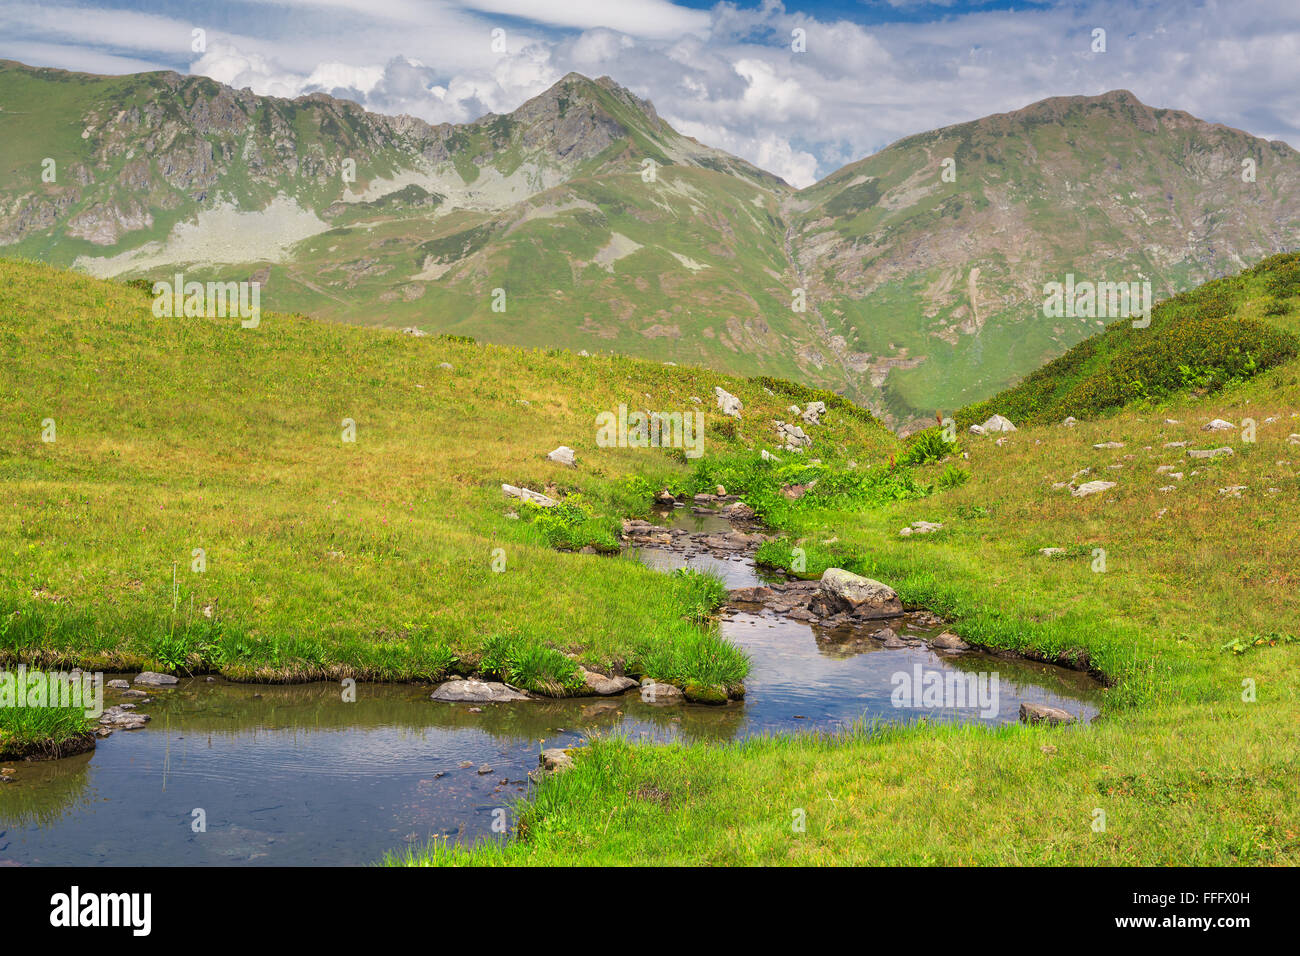 Valley of seven lakes, Caucasus mountains, Abkhazia, Georgia Stock Photo